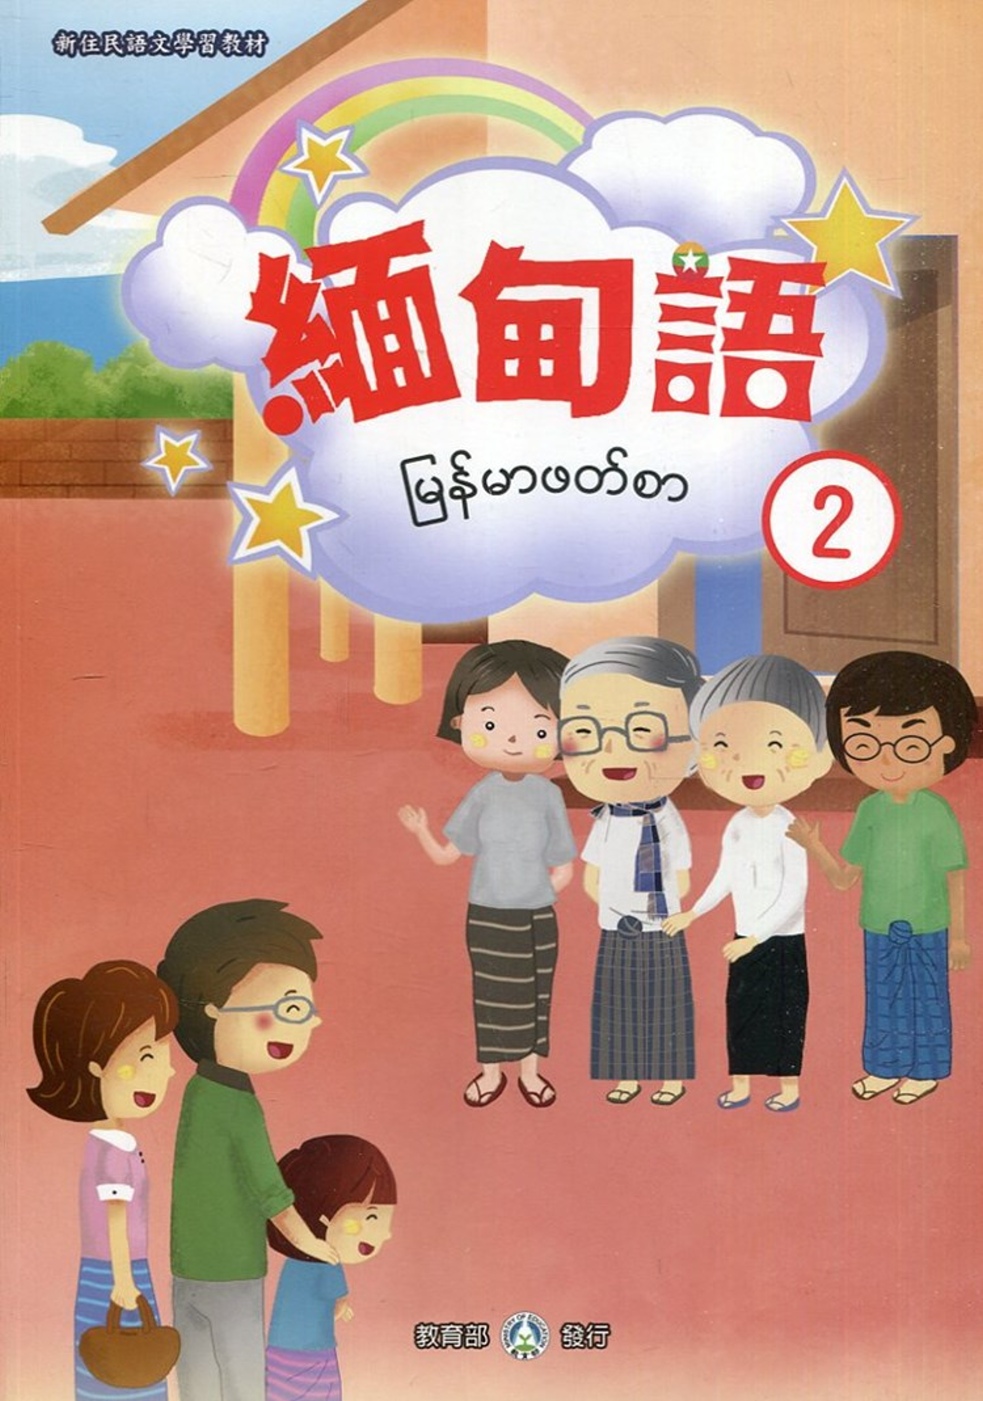 新住民語文學習教材緬甸語第2冊(二版)